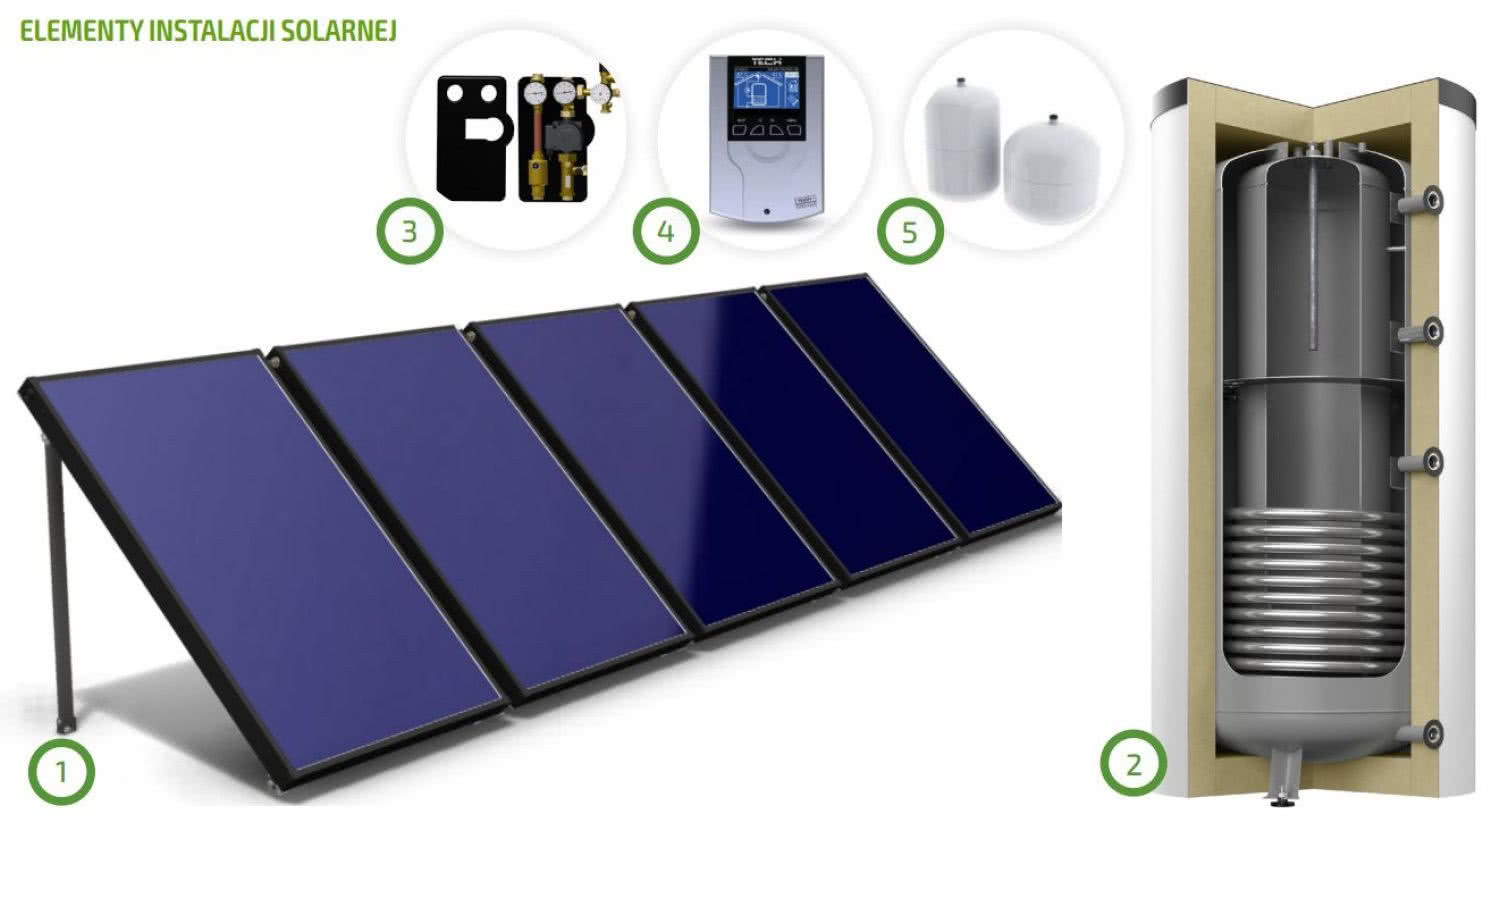 Elementy instalacji solarnej do przygotowania cwu: 1 - kolektory słoneczne, 2 - bufor dwufunkcyjny, 3 - grupa solarna, 4 - sterownik, 5 - naczynie wzbiorcze fot. OEM Energy